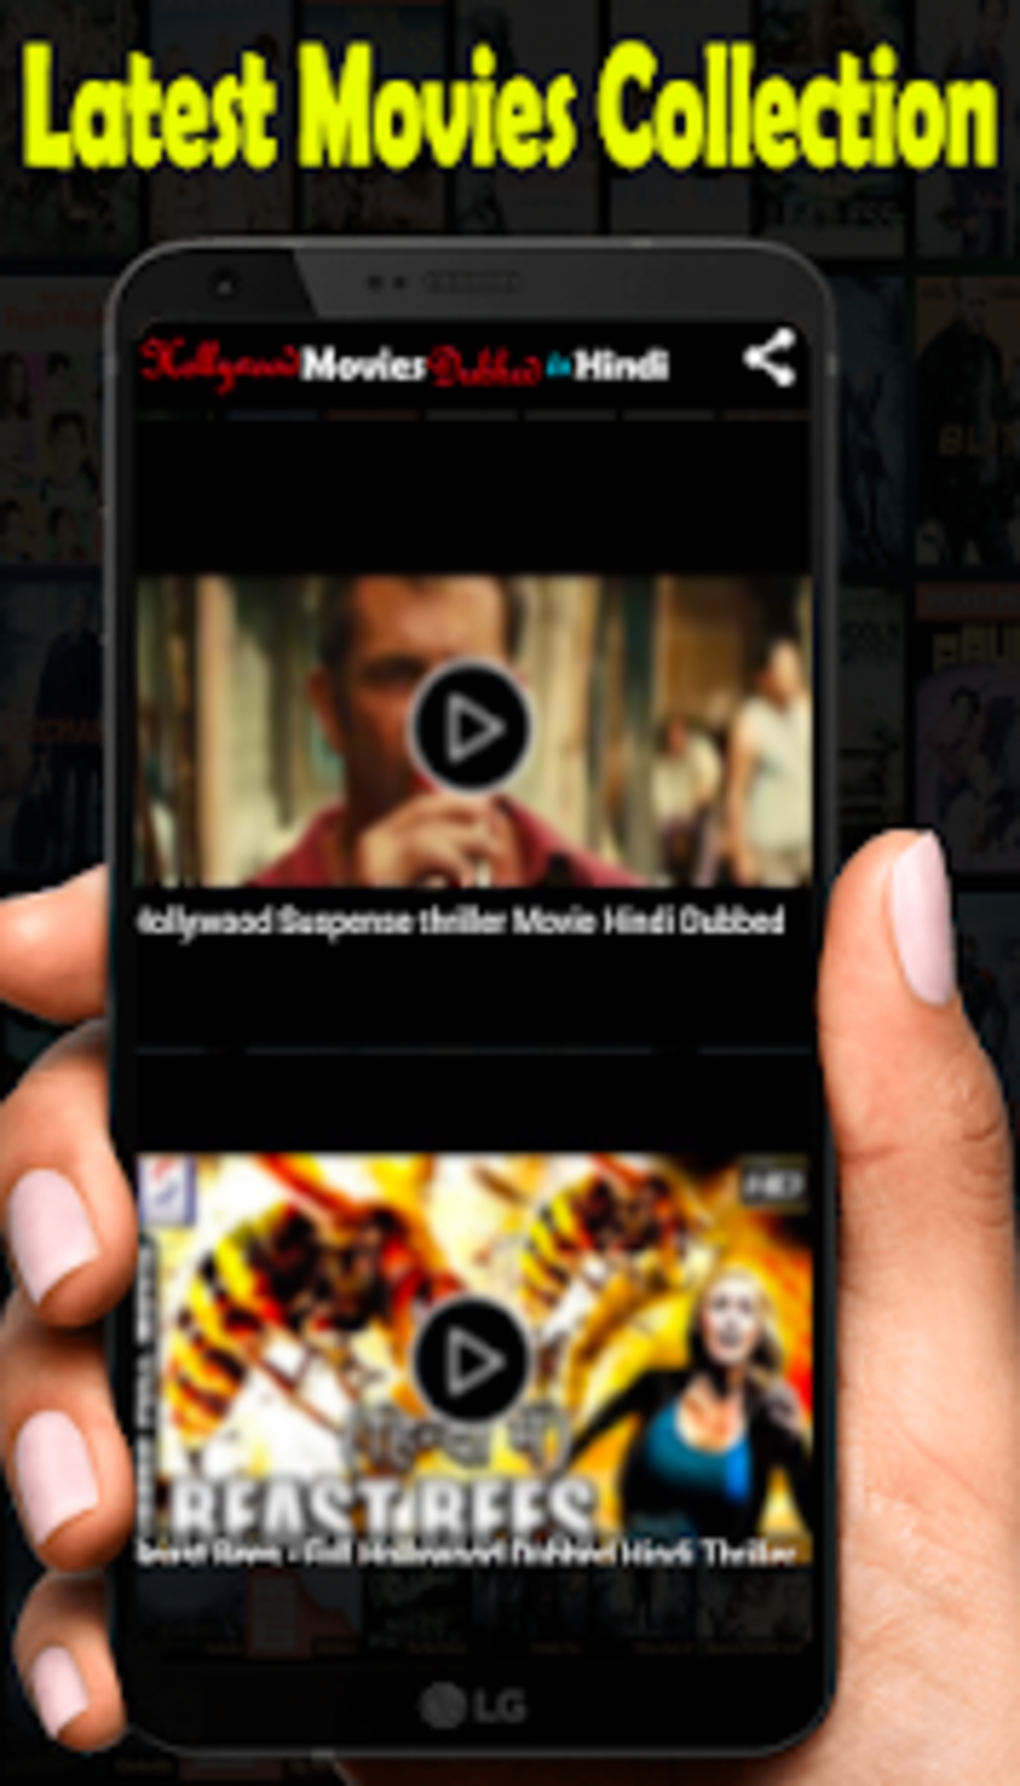 free hollywood hindi dubbed movies app